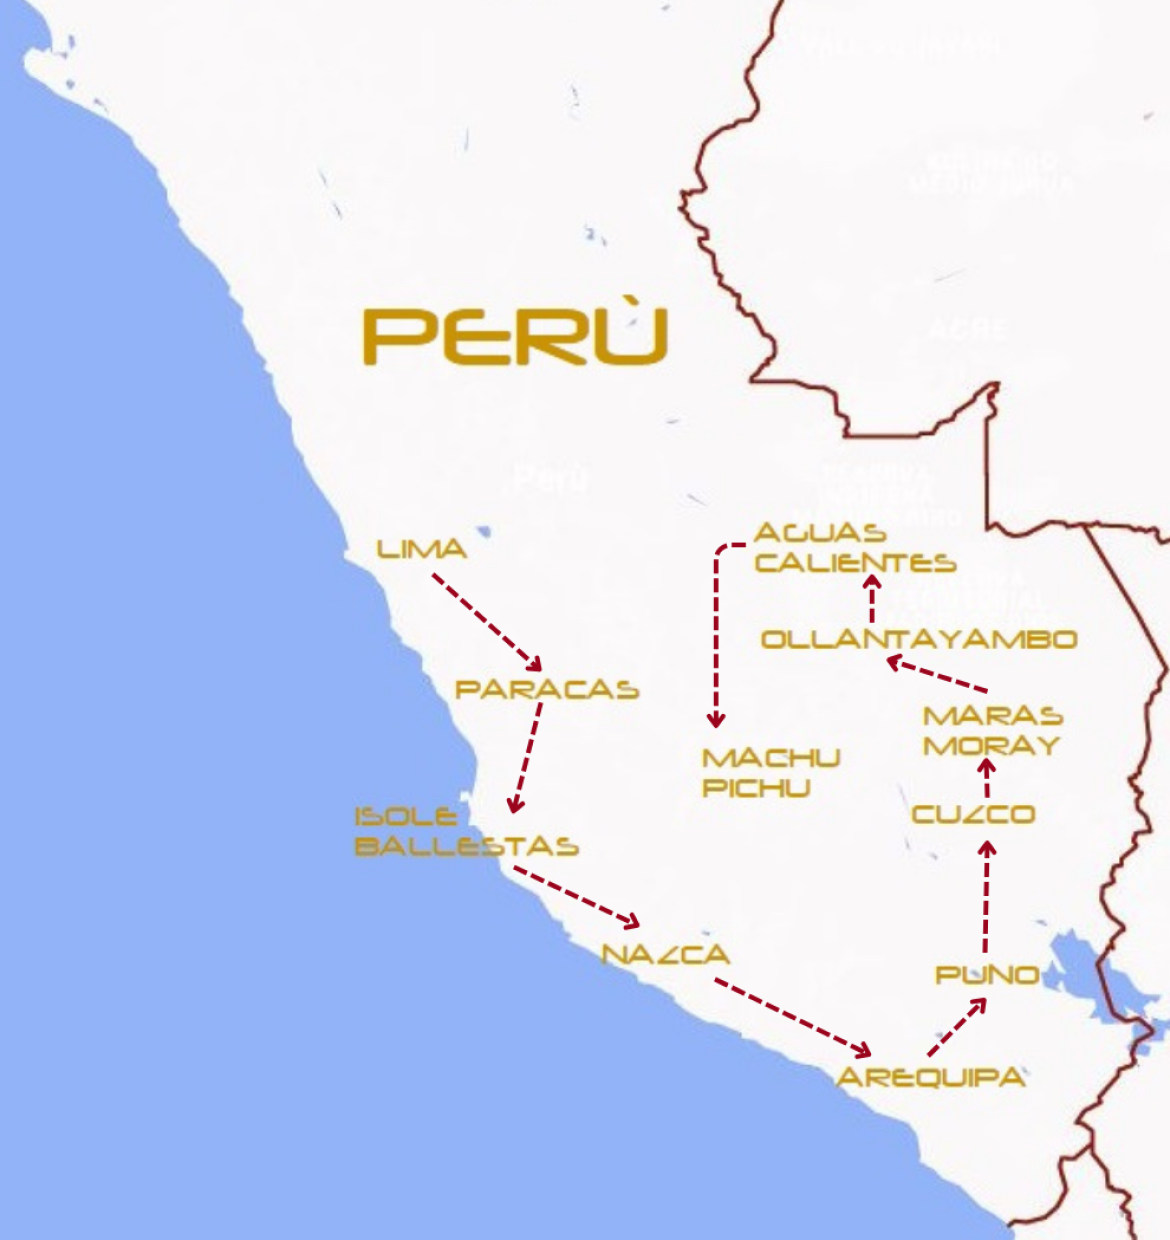 Mappa viaggi-peru